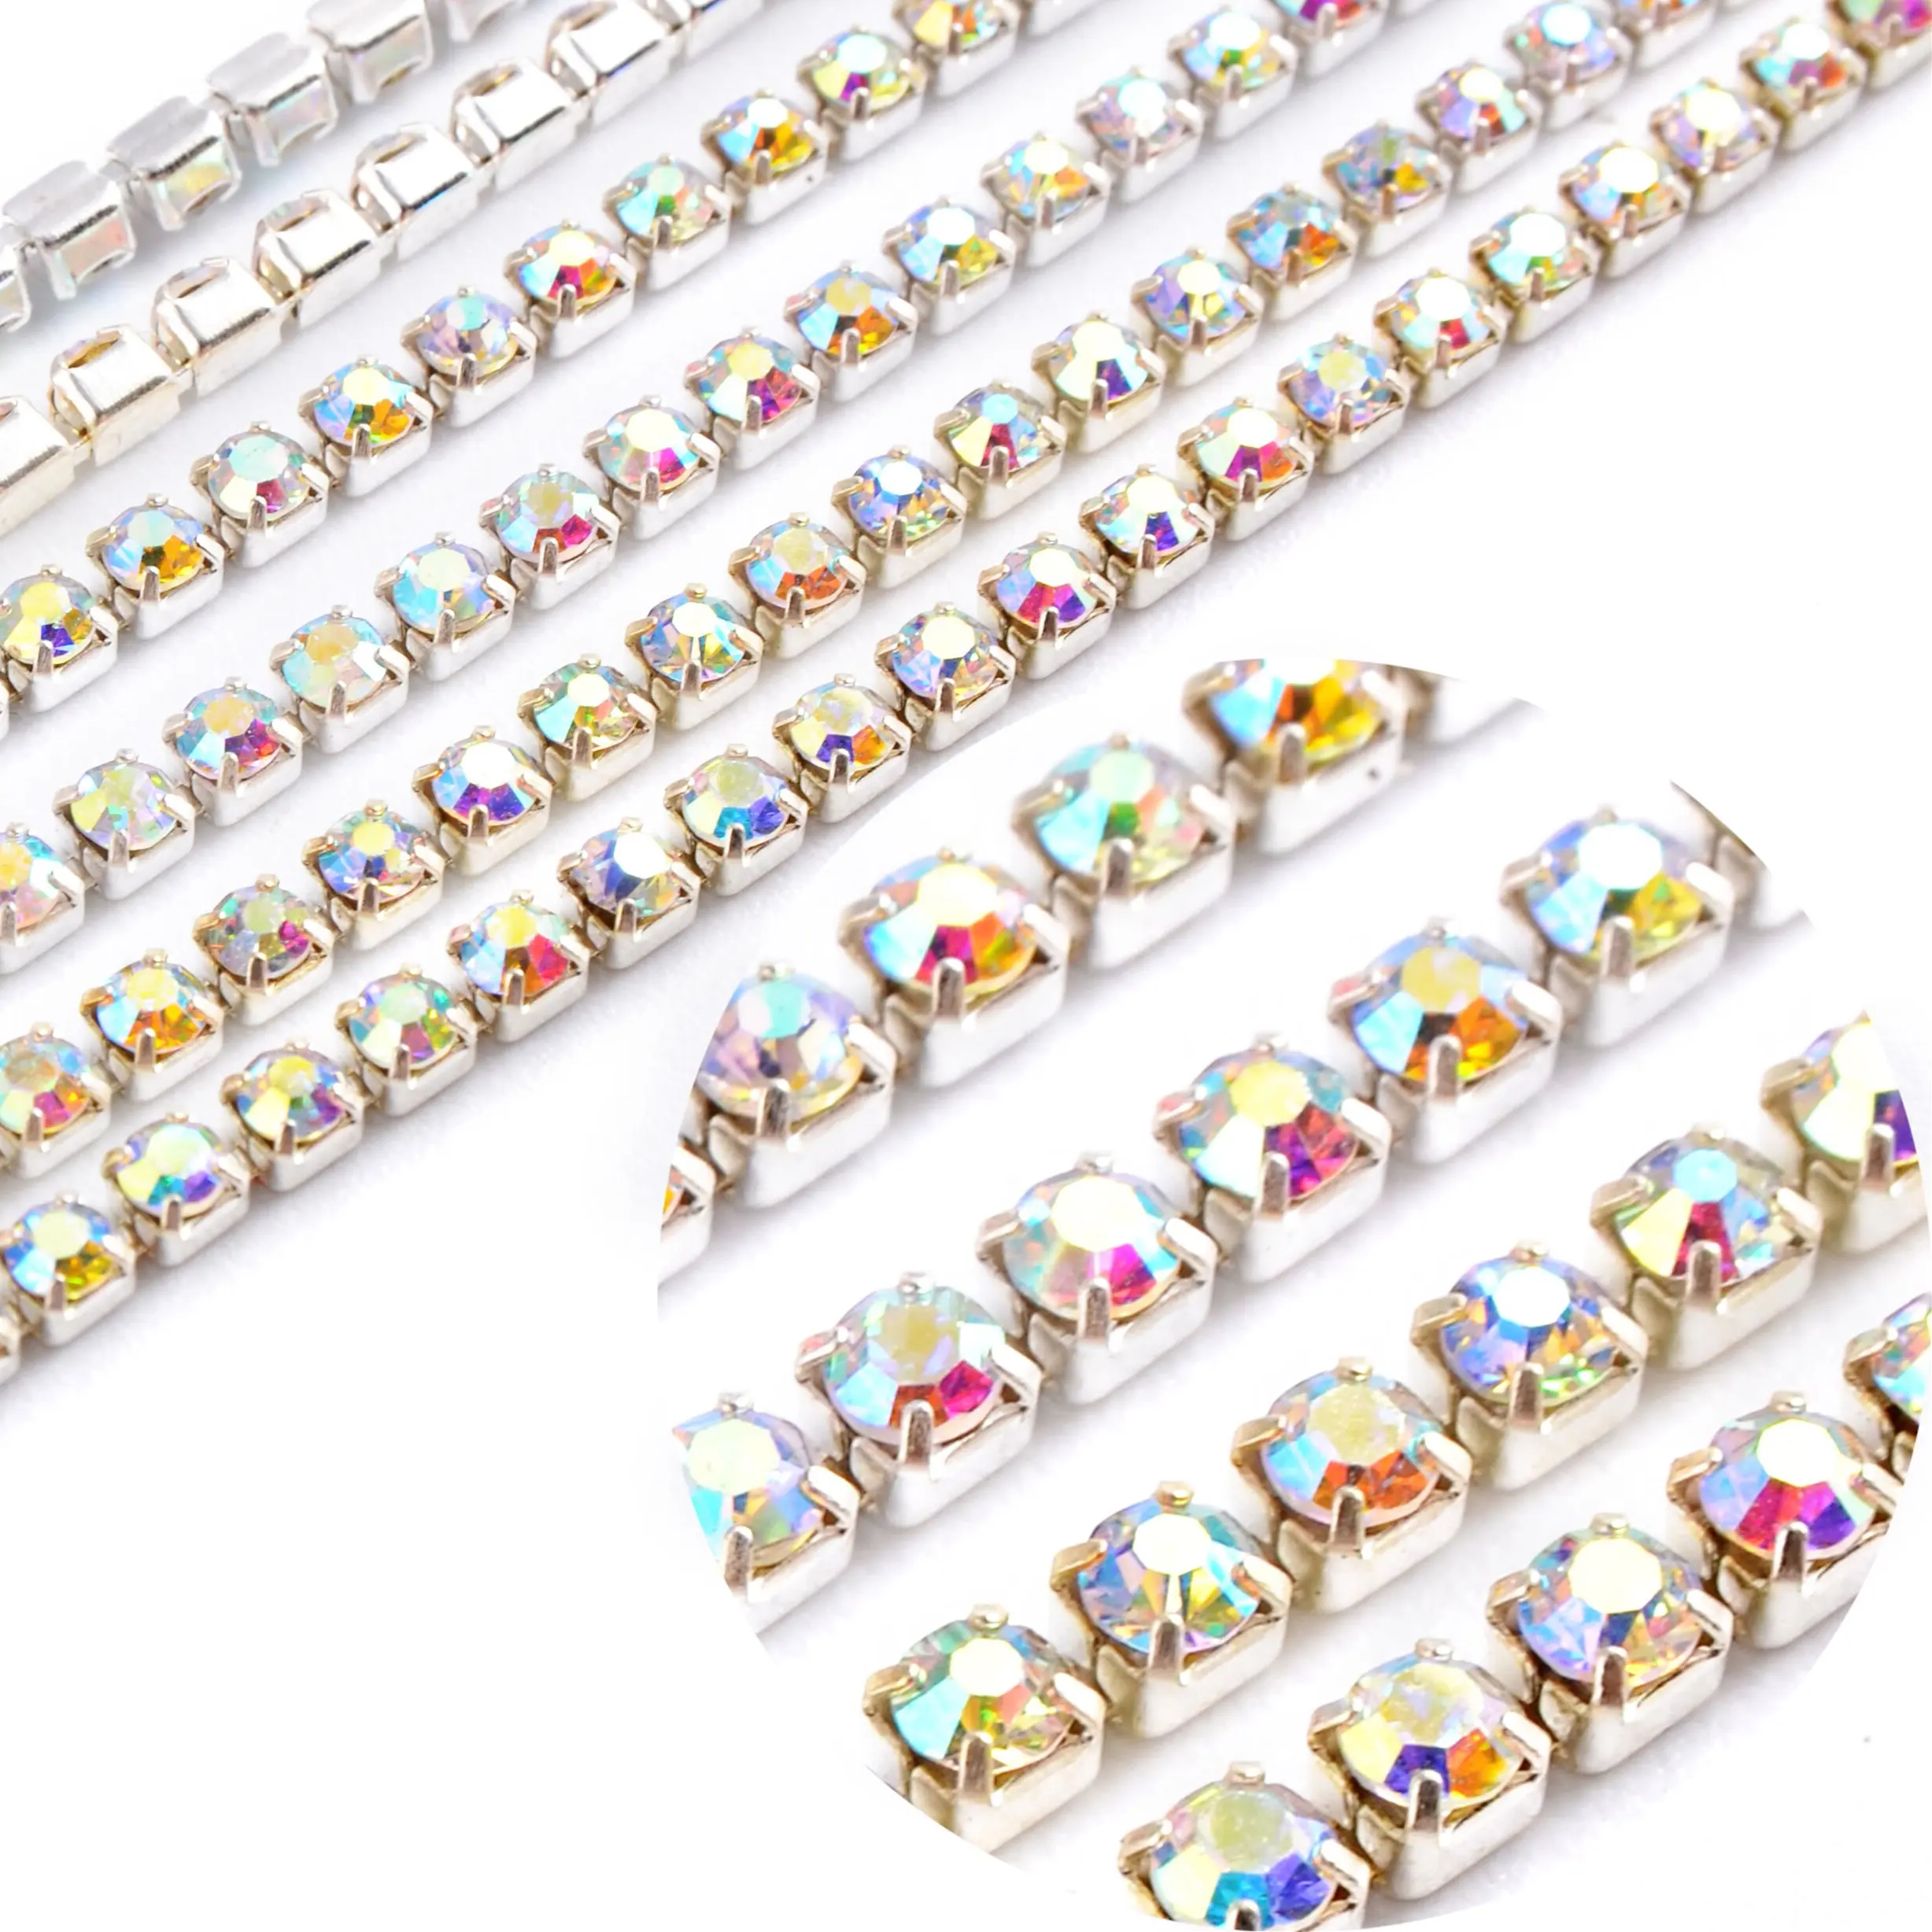 Chaîne en argent et cuivre, chaîne en diamant, strass et cristal, perles, 80mm, pour la fabrication de bijoux et de vêtements